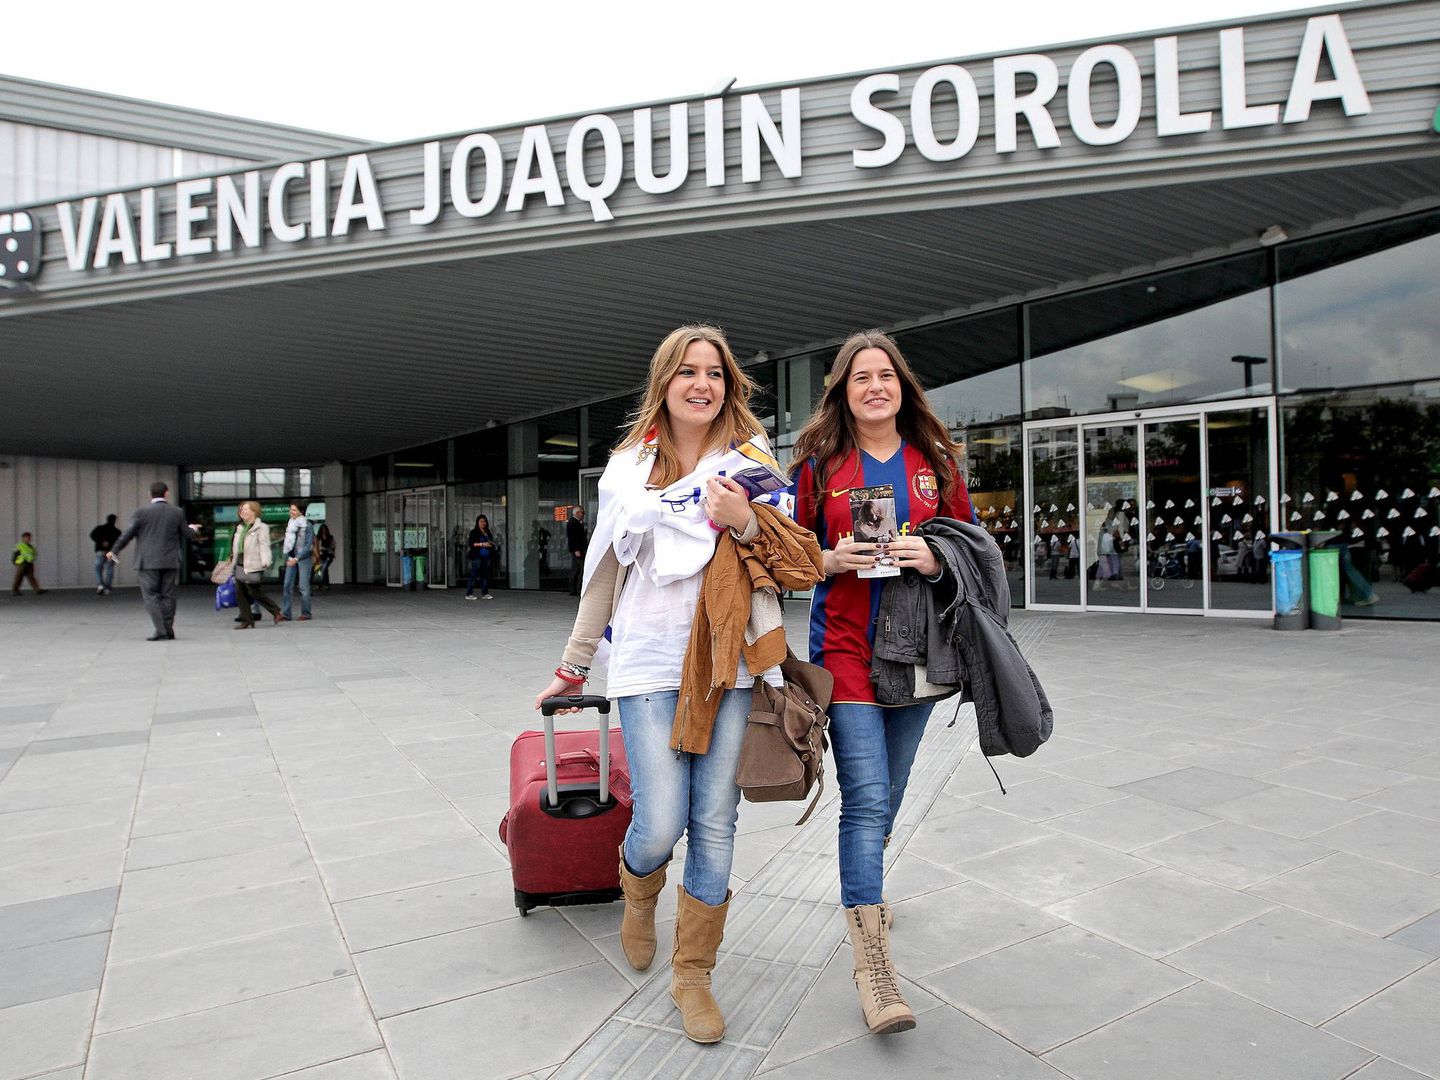 La estación Joaquín Sorolla de Valencia, de salida y llegada de los trenes Euromed de Barcelona. (Efe)